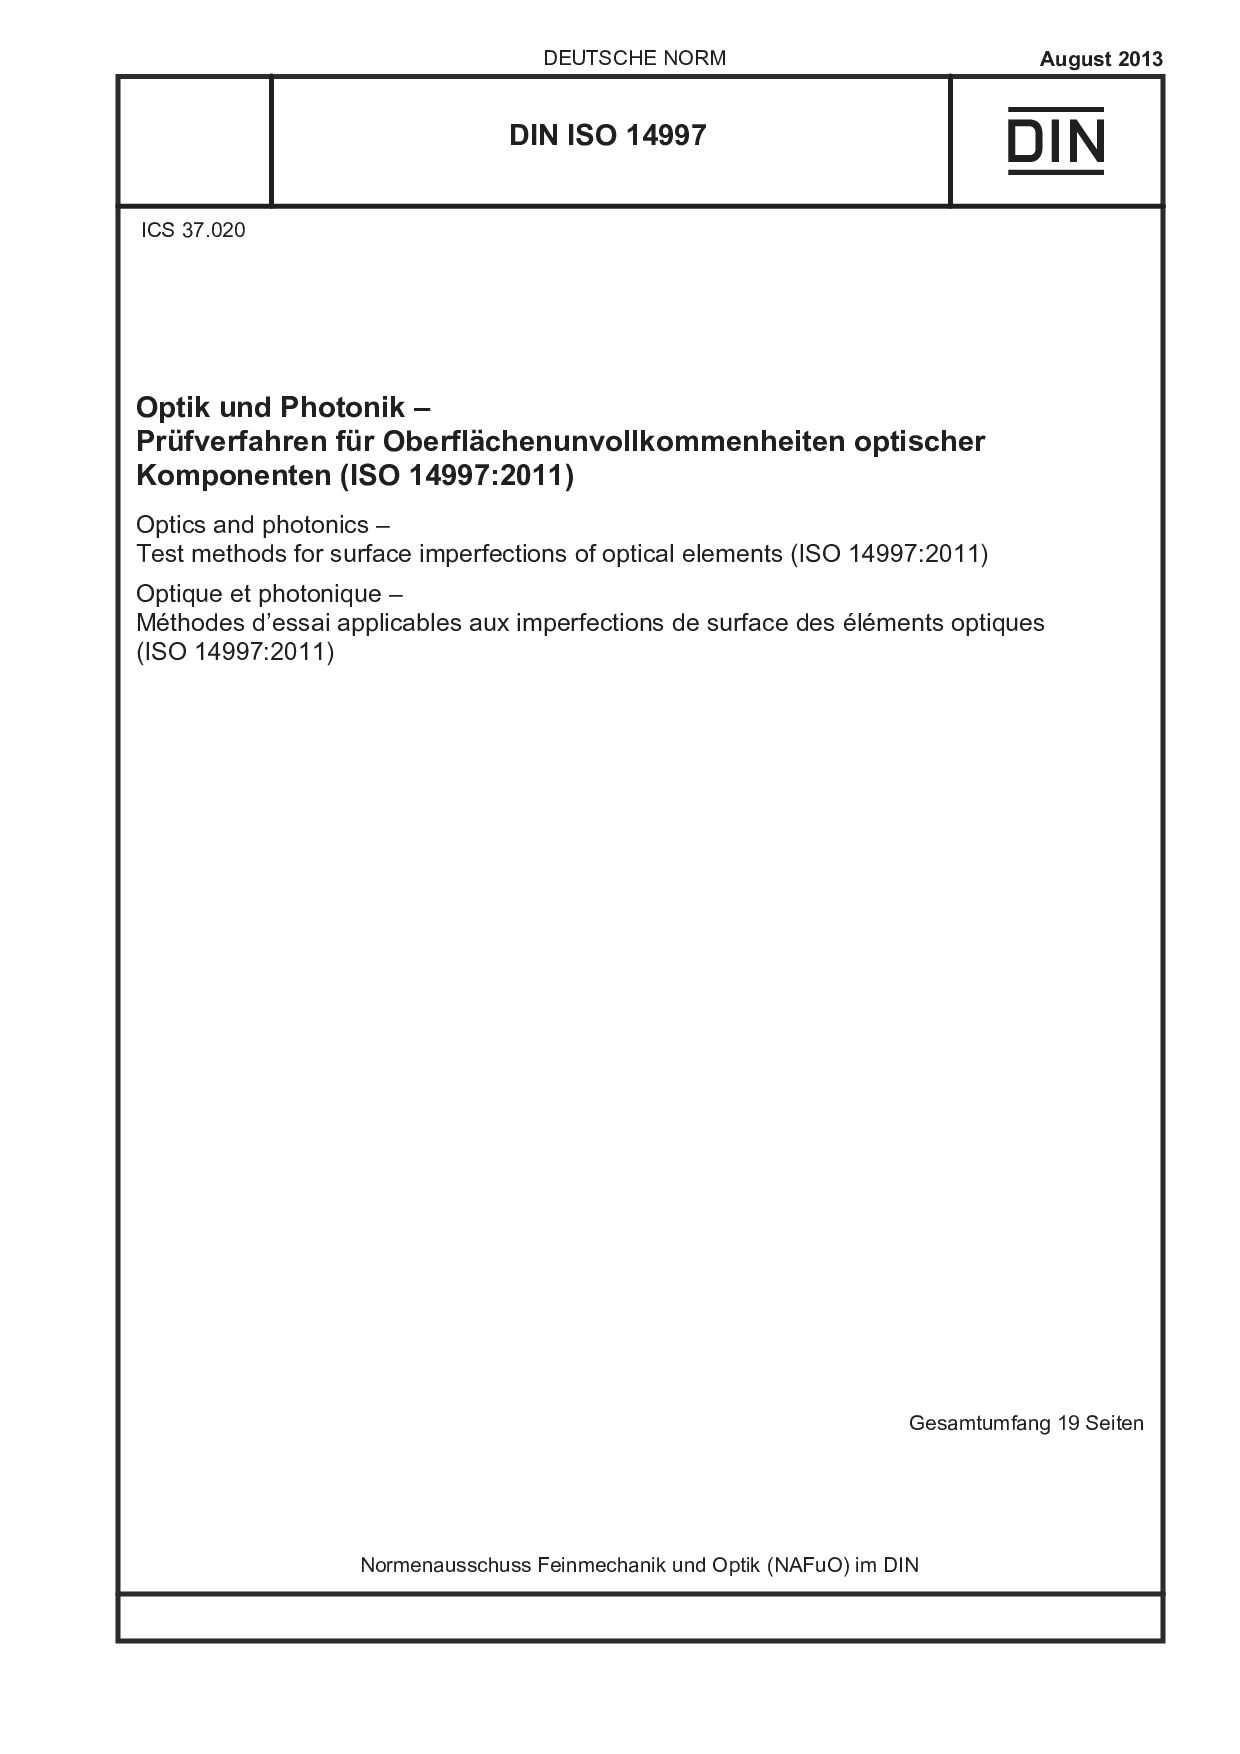 DIN ISO 14997:2013封面图